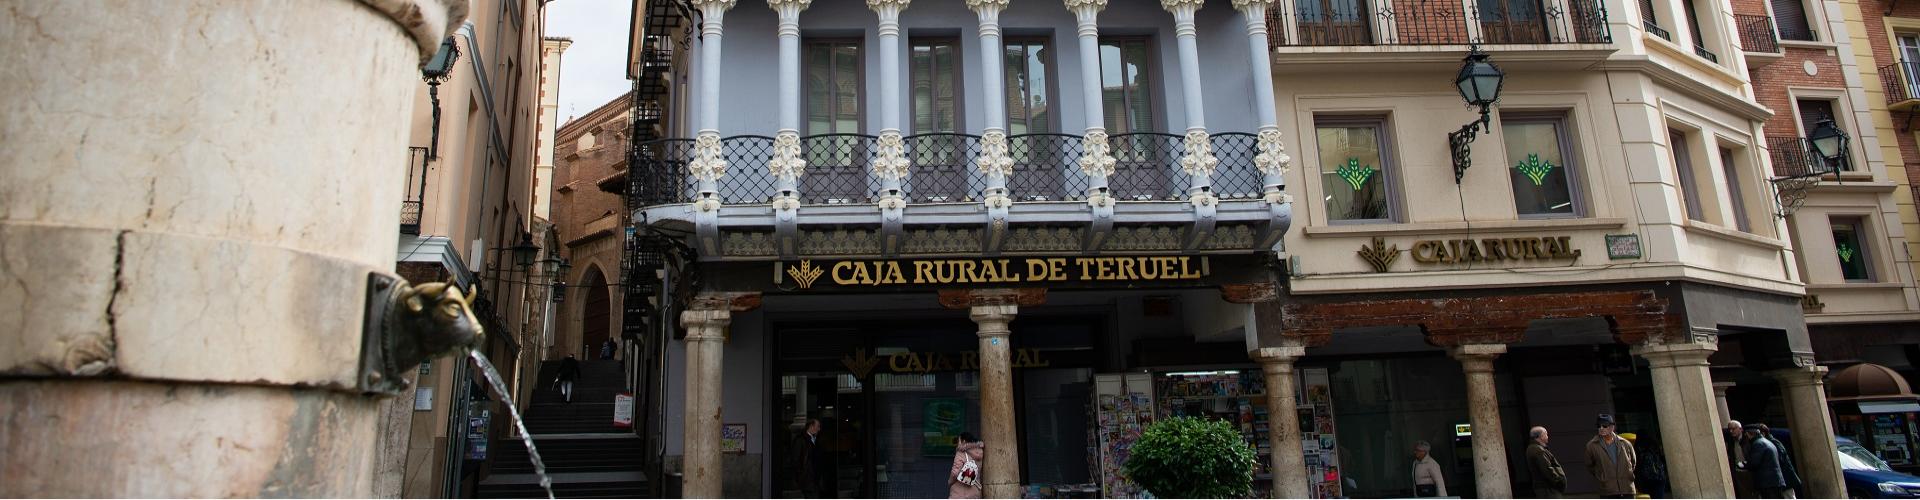 Quienes somos - Caja Rural de Teruel